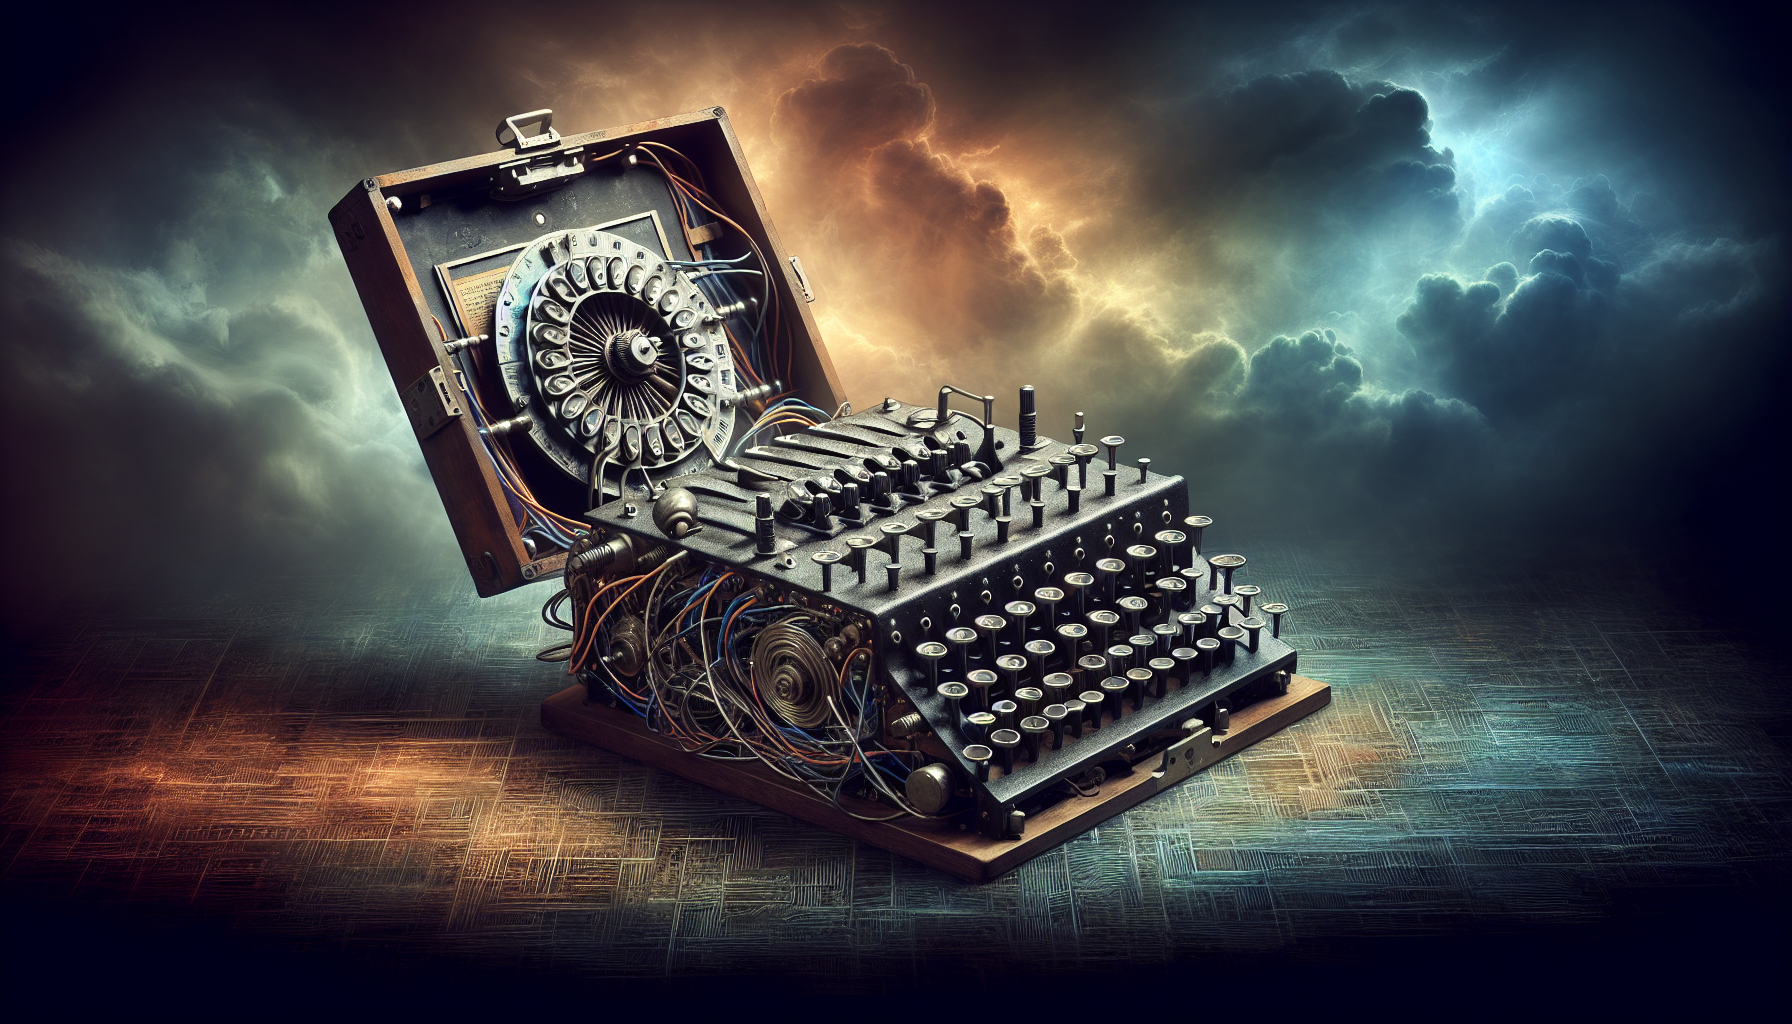 Artistic representation of the Enigma machine